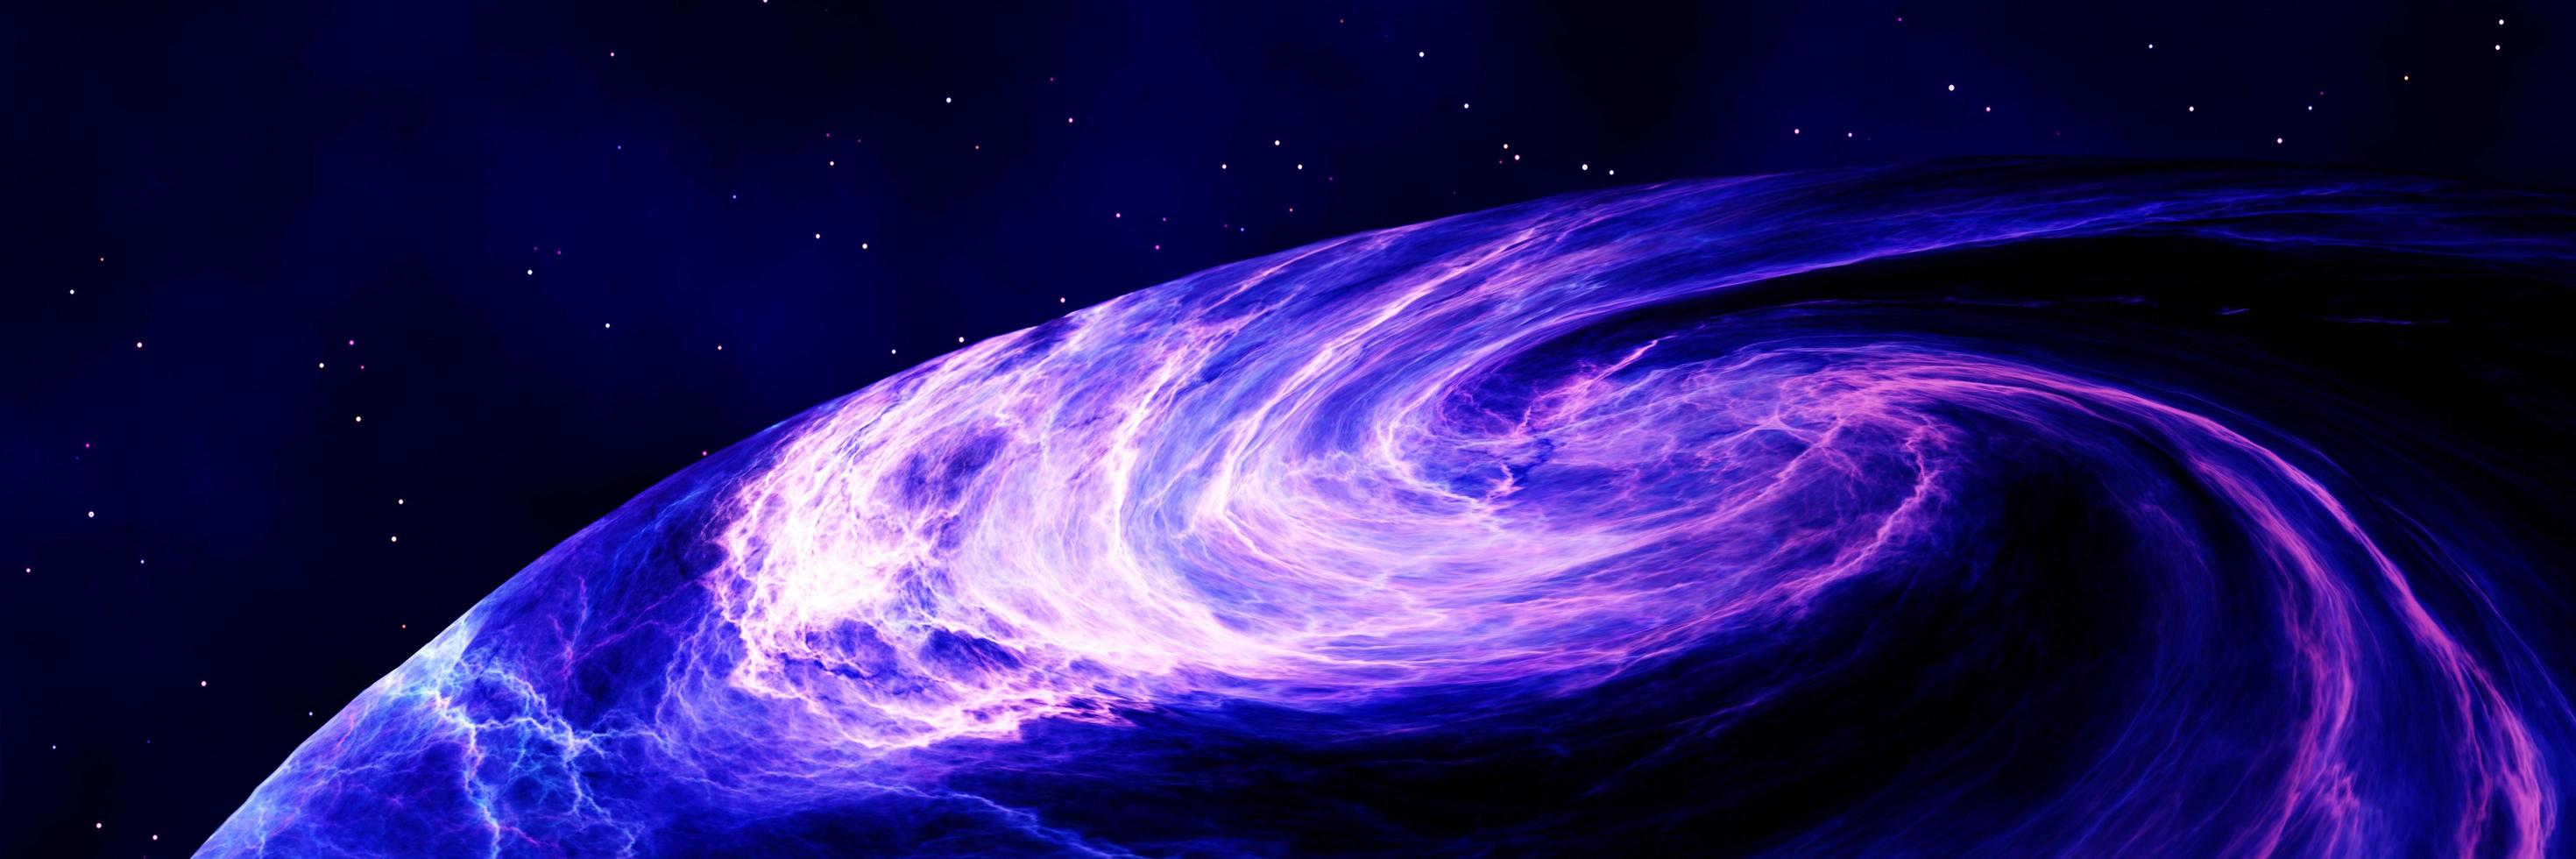 Versperrte Spiralgalaxie, die sich im Weltraum dreht und durch Sterne fliegt. Whirlpool-Galaxie-Spiralgravitationskräfte. 3D-Rendering. foto